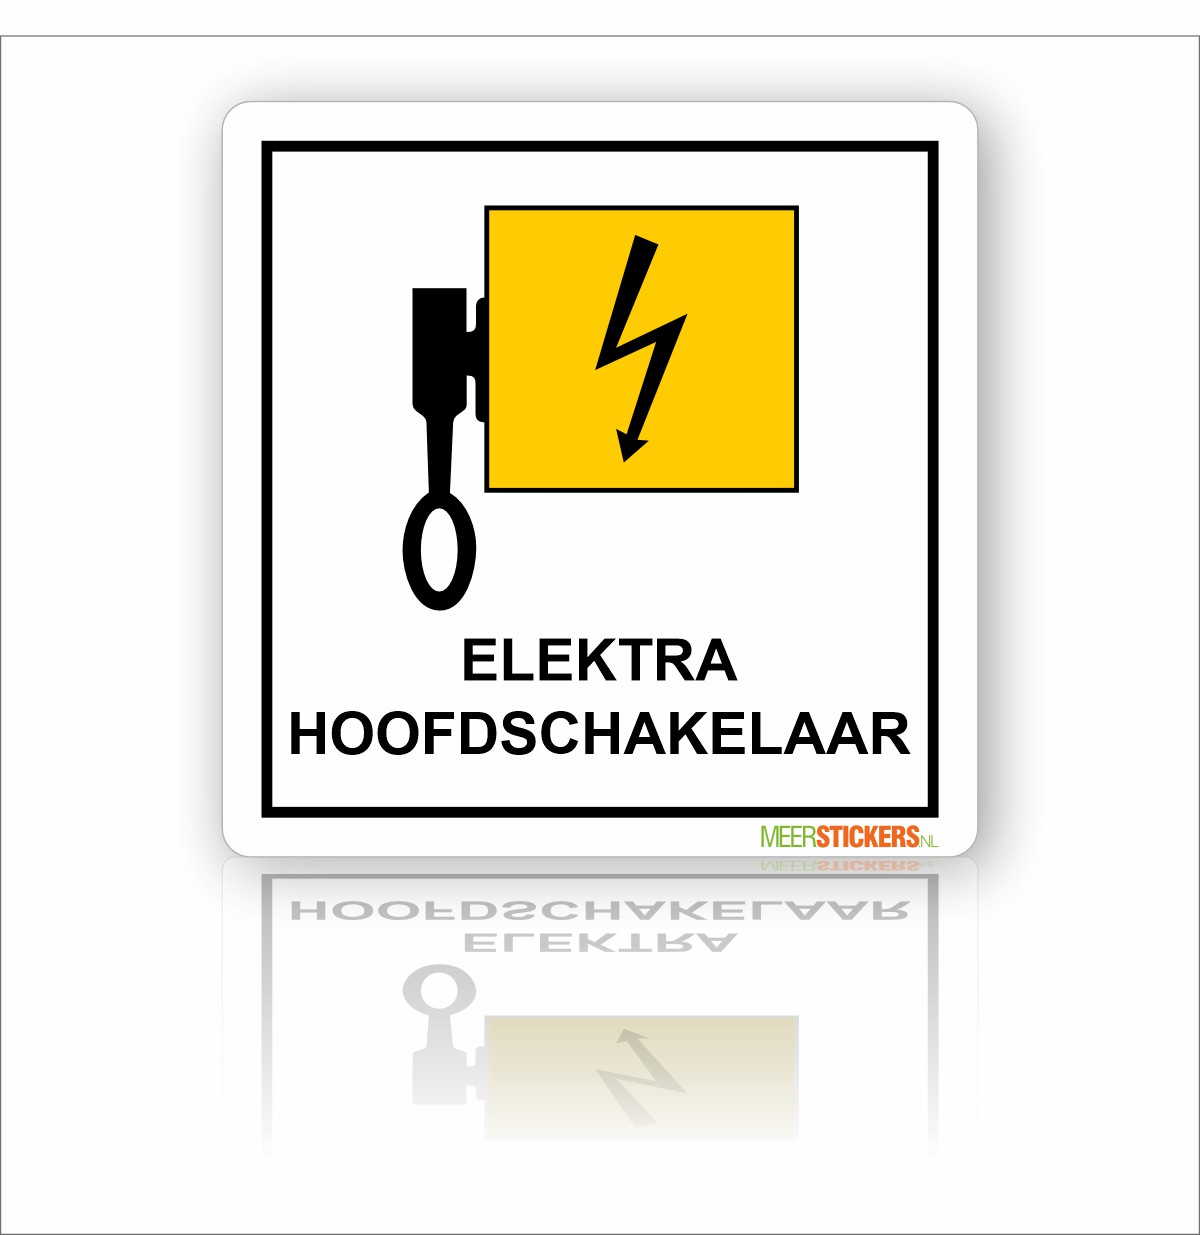 Onderzoek single Zie insecten Pictogram sticker Hoofdschakelaar elektra - MeerStickers.nl